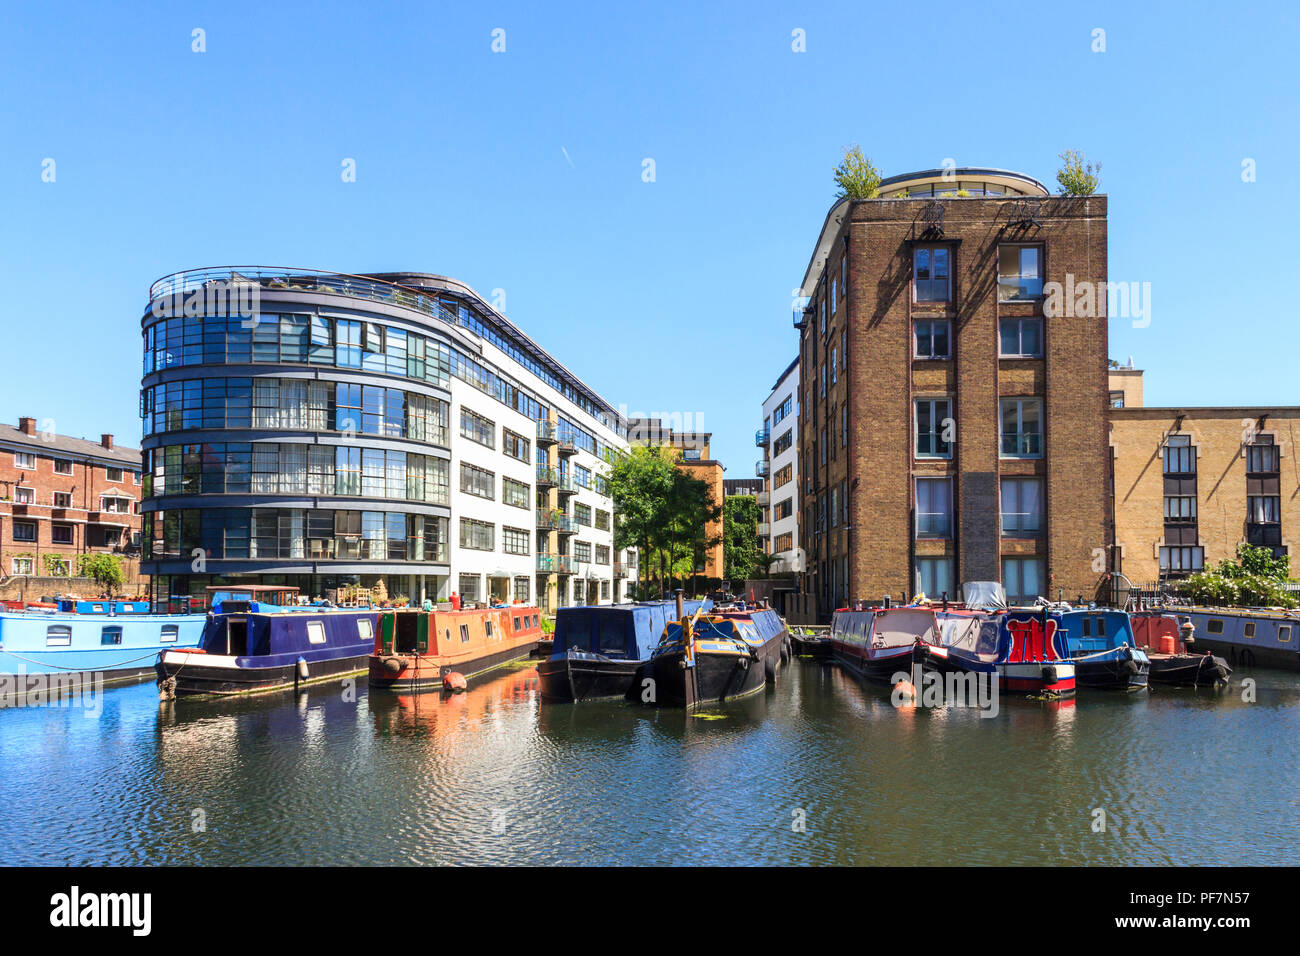 Narrowboats amarré par Ice Wharf et Albert Dock dans le bassin Battlebridge de Regent's Canal, Kings Cross, London, UK Banque D'Images